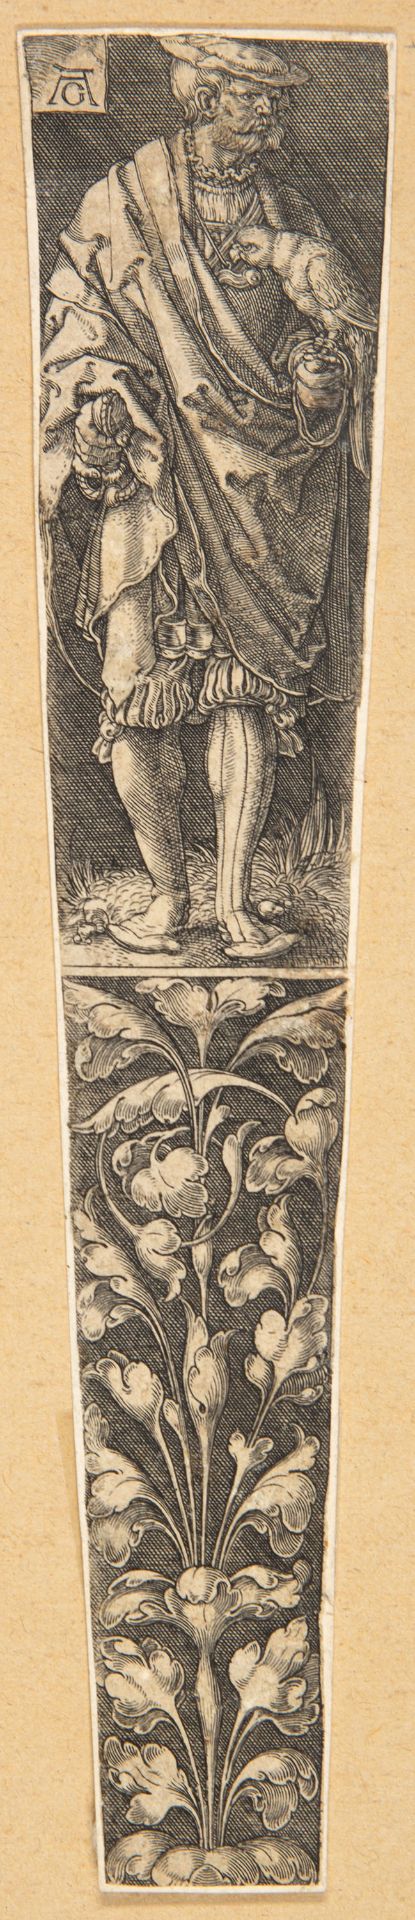 Heinrich Aldegrever. Dolchscheide mit einem Edelherren mit Papagei. Dazu der obere Teil nochmal. Kup - Bild 2 aus 2